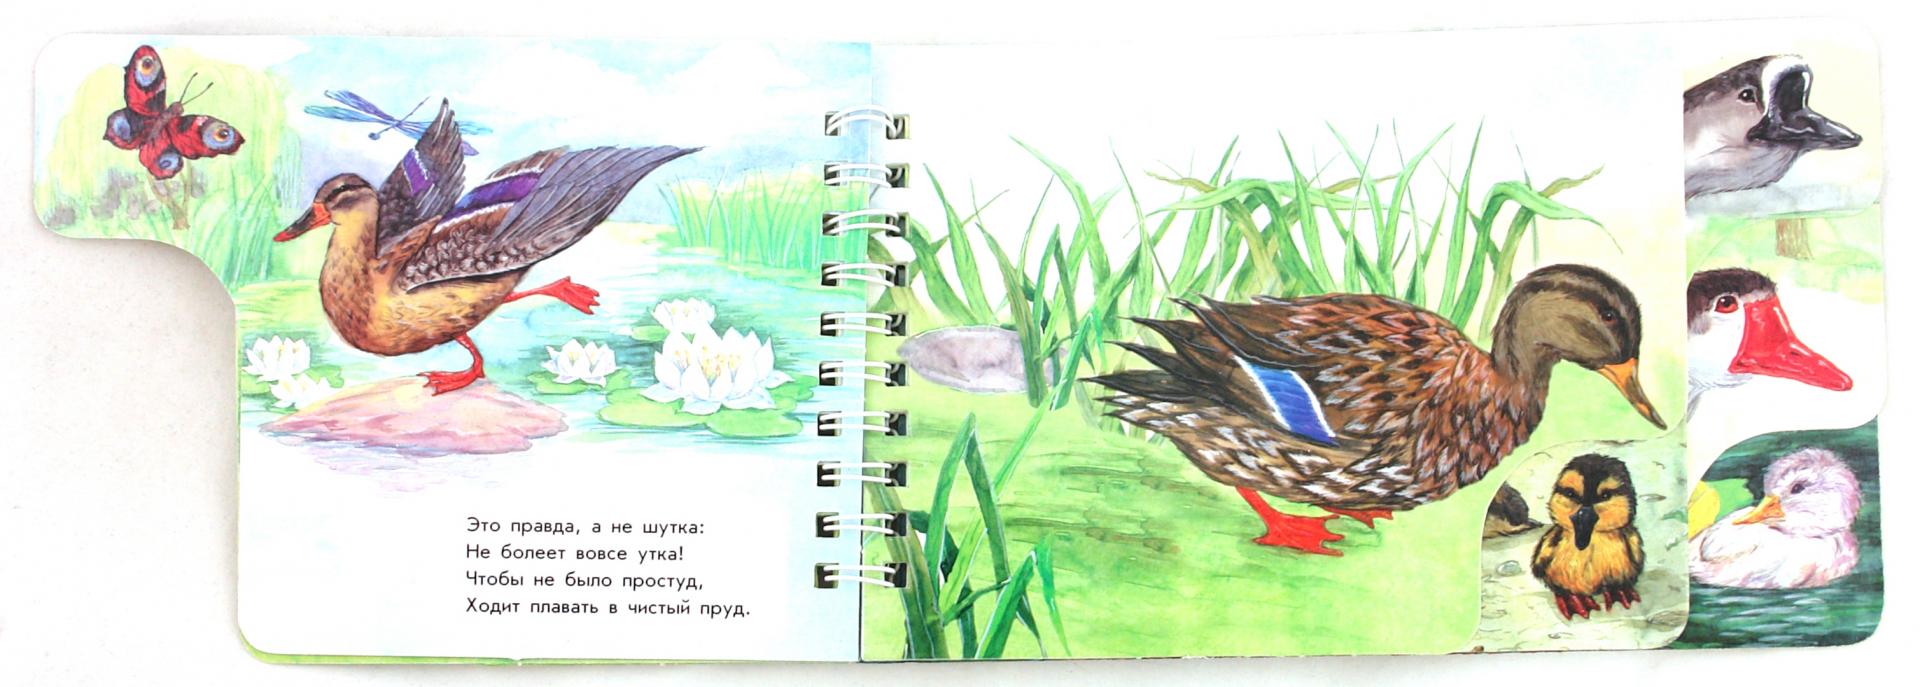 Иллюстрация 1 из 11 для На птичьем дворе - Юлия Каспарова | Лабиринт - книги. Источник: Лабиринт